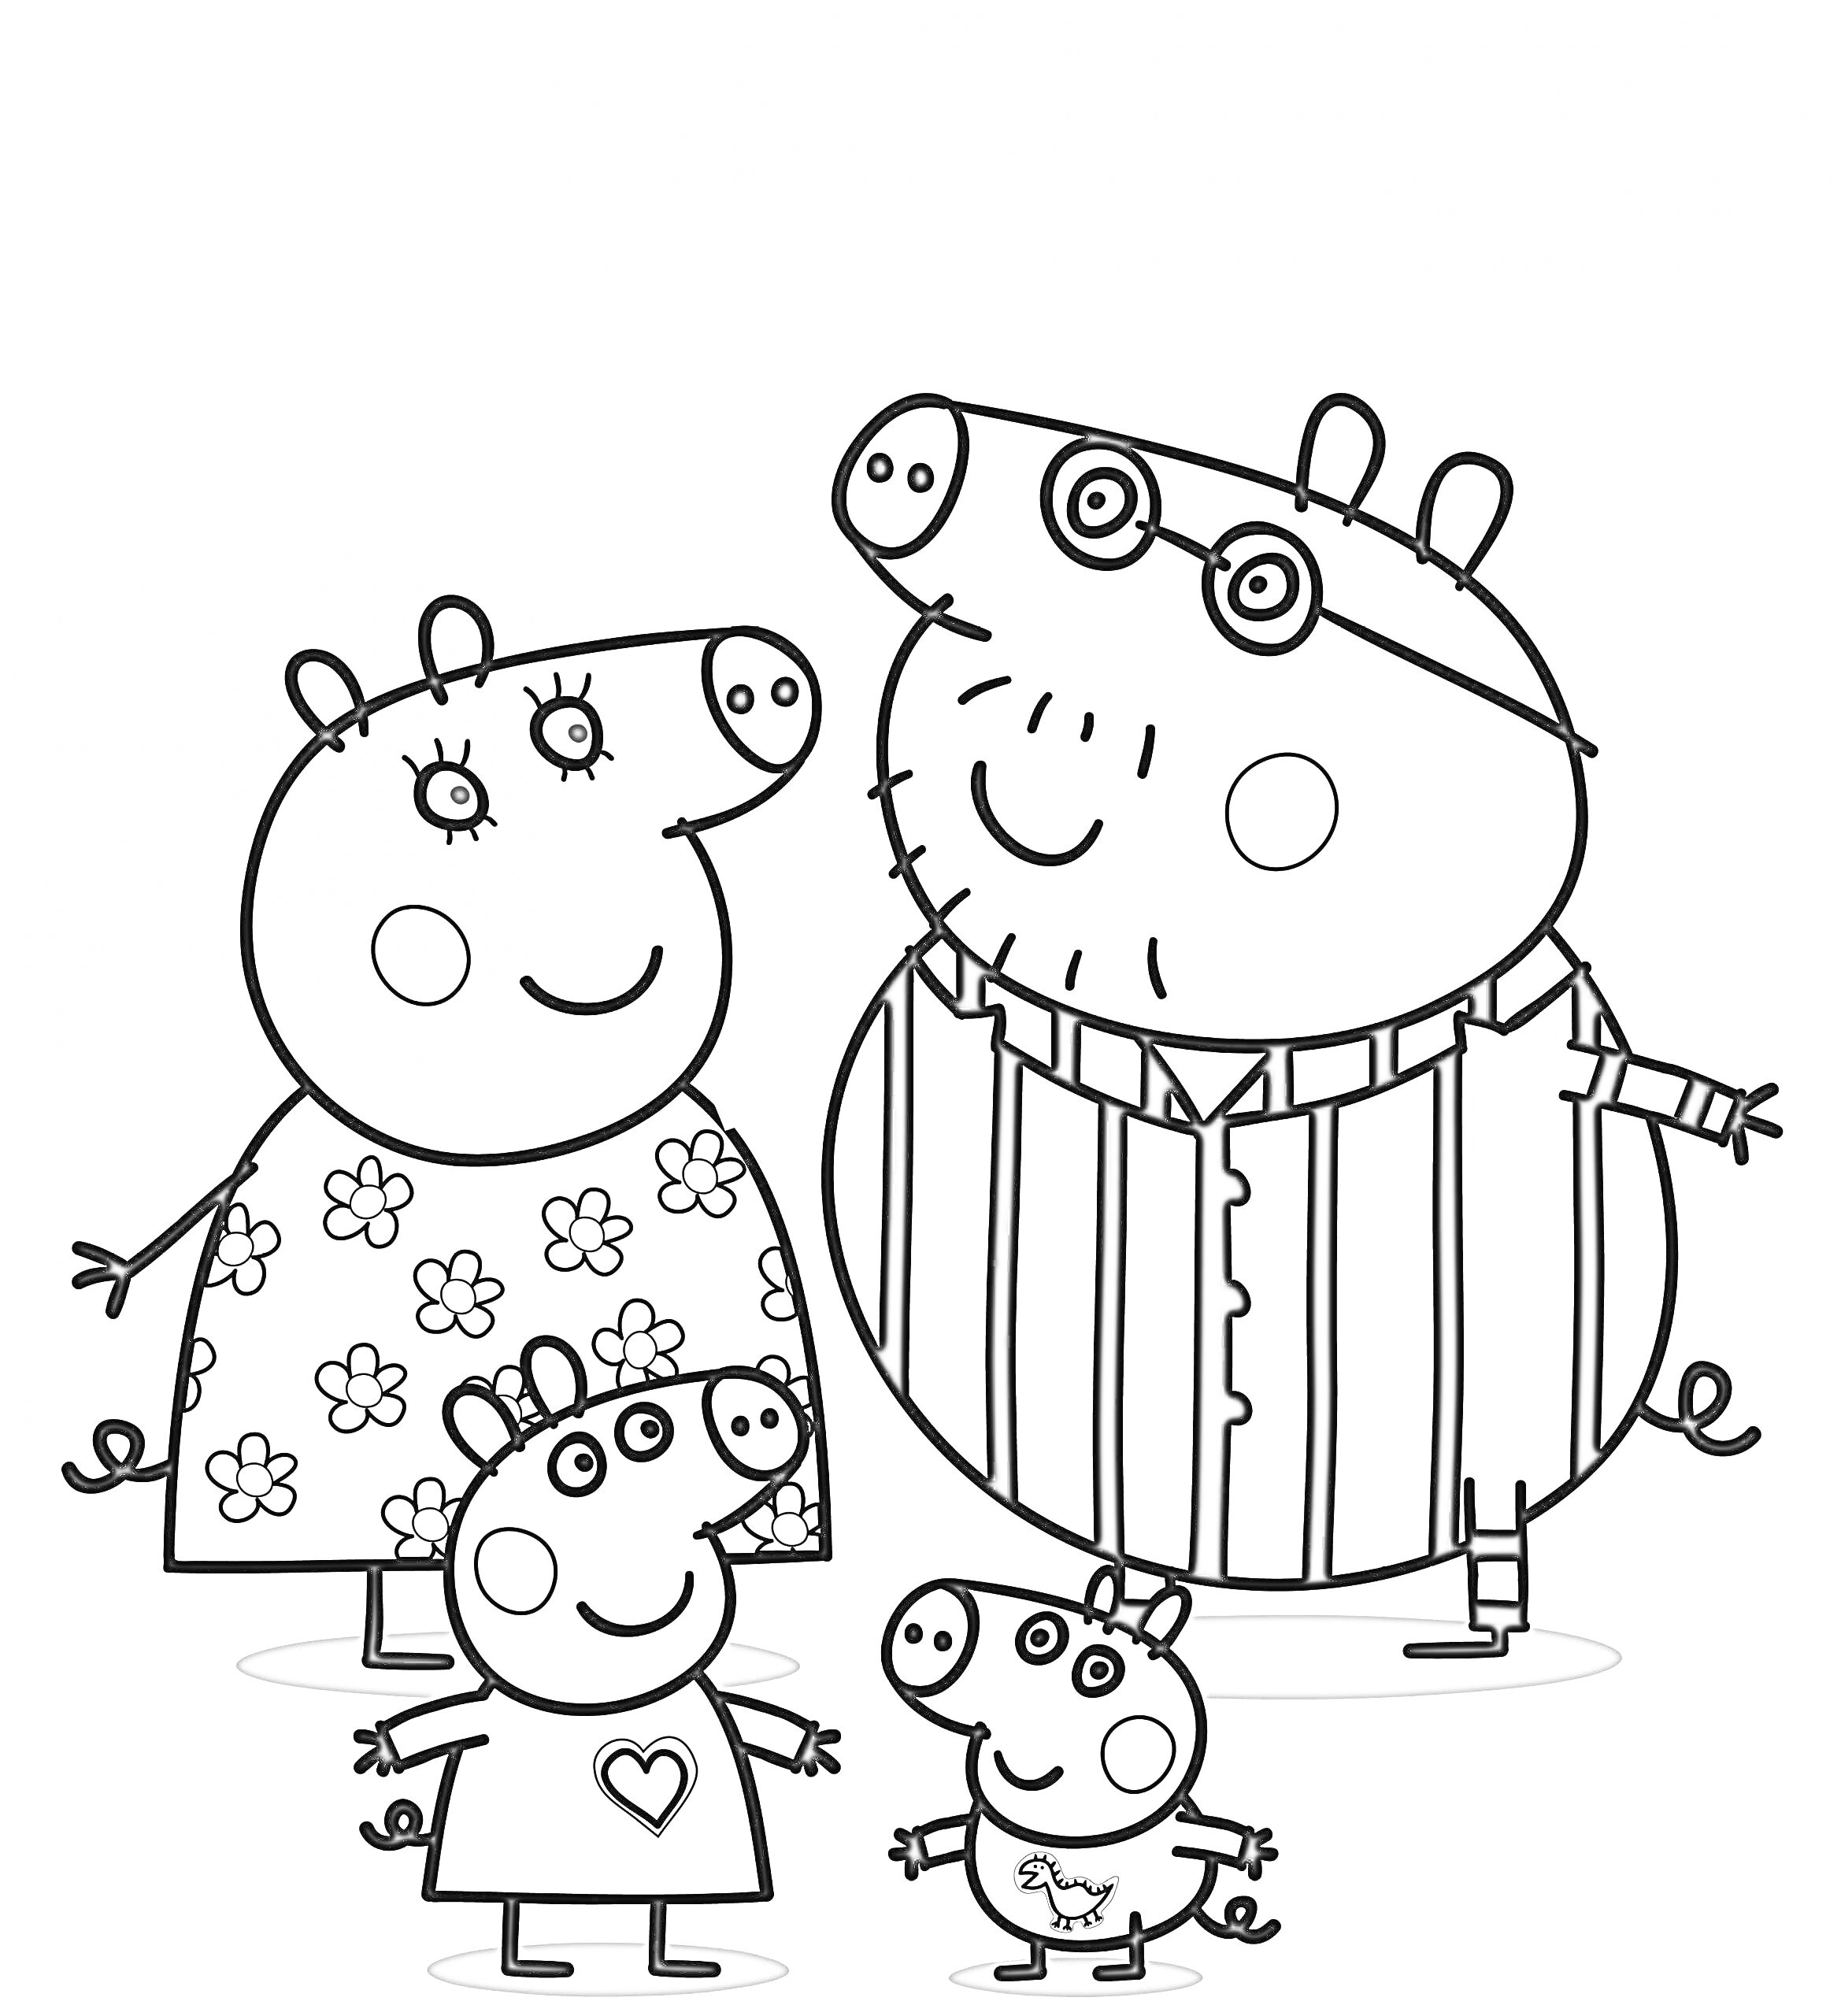 Раскраска Свинка Пеппа с семьей на прогулке: Свинка Пеппа, Папа Свин в полосатой рубашке, Мама Свинка в цветастом платье, младший брат Джордж в футболке с динозавром, маленькая свинка в футболке с сердцем.